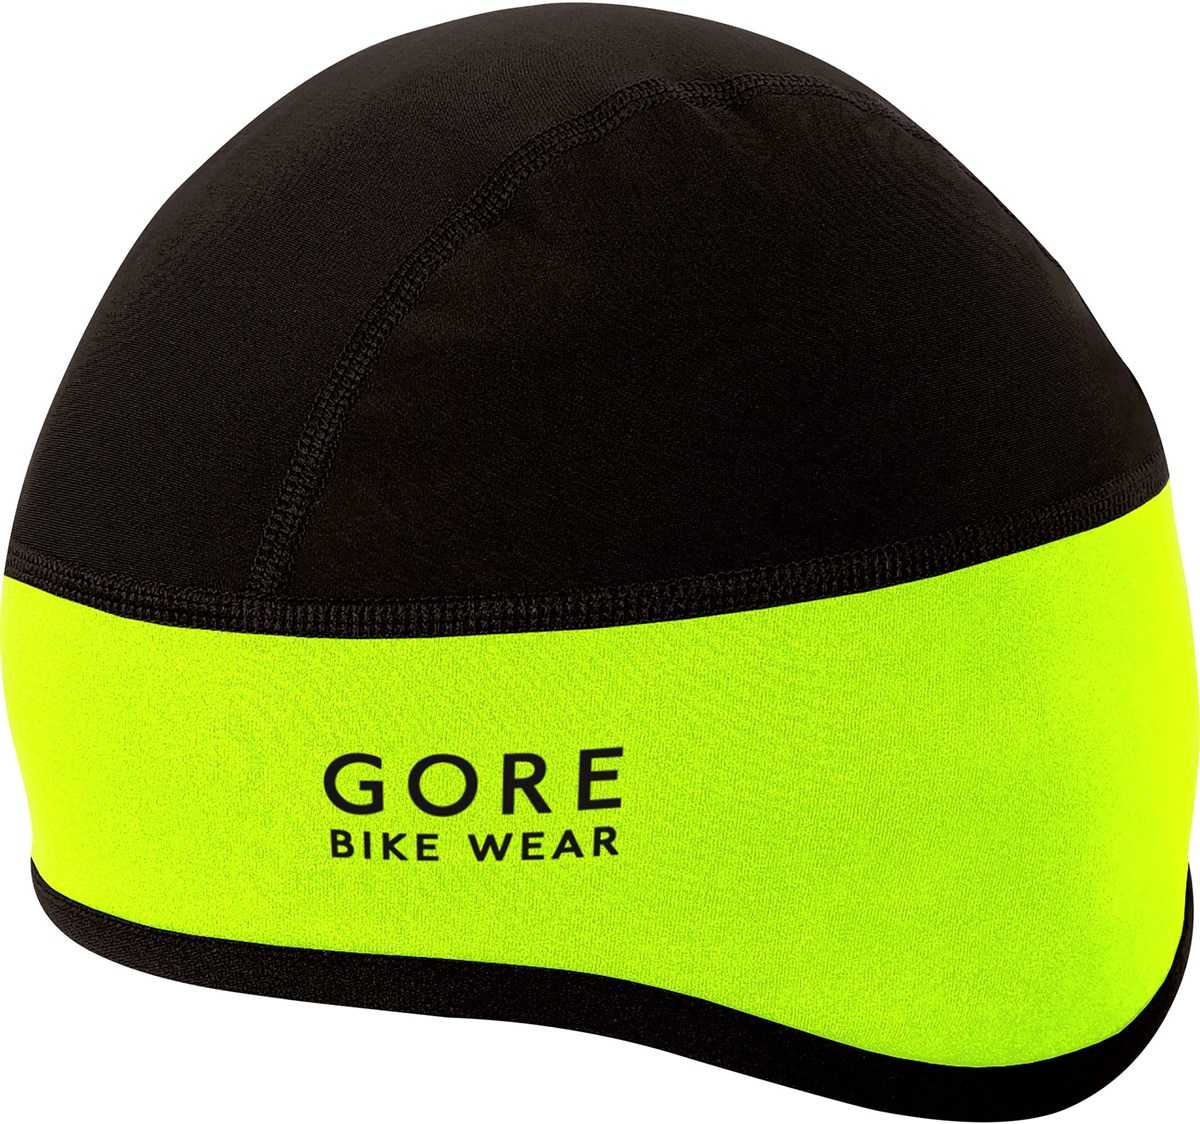 Gore Universal Windstopper Helmet Cap AW17